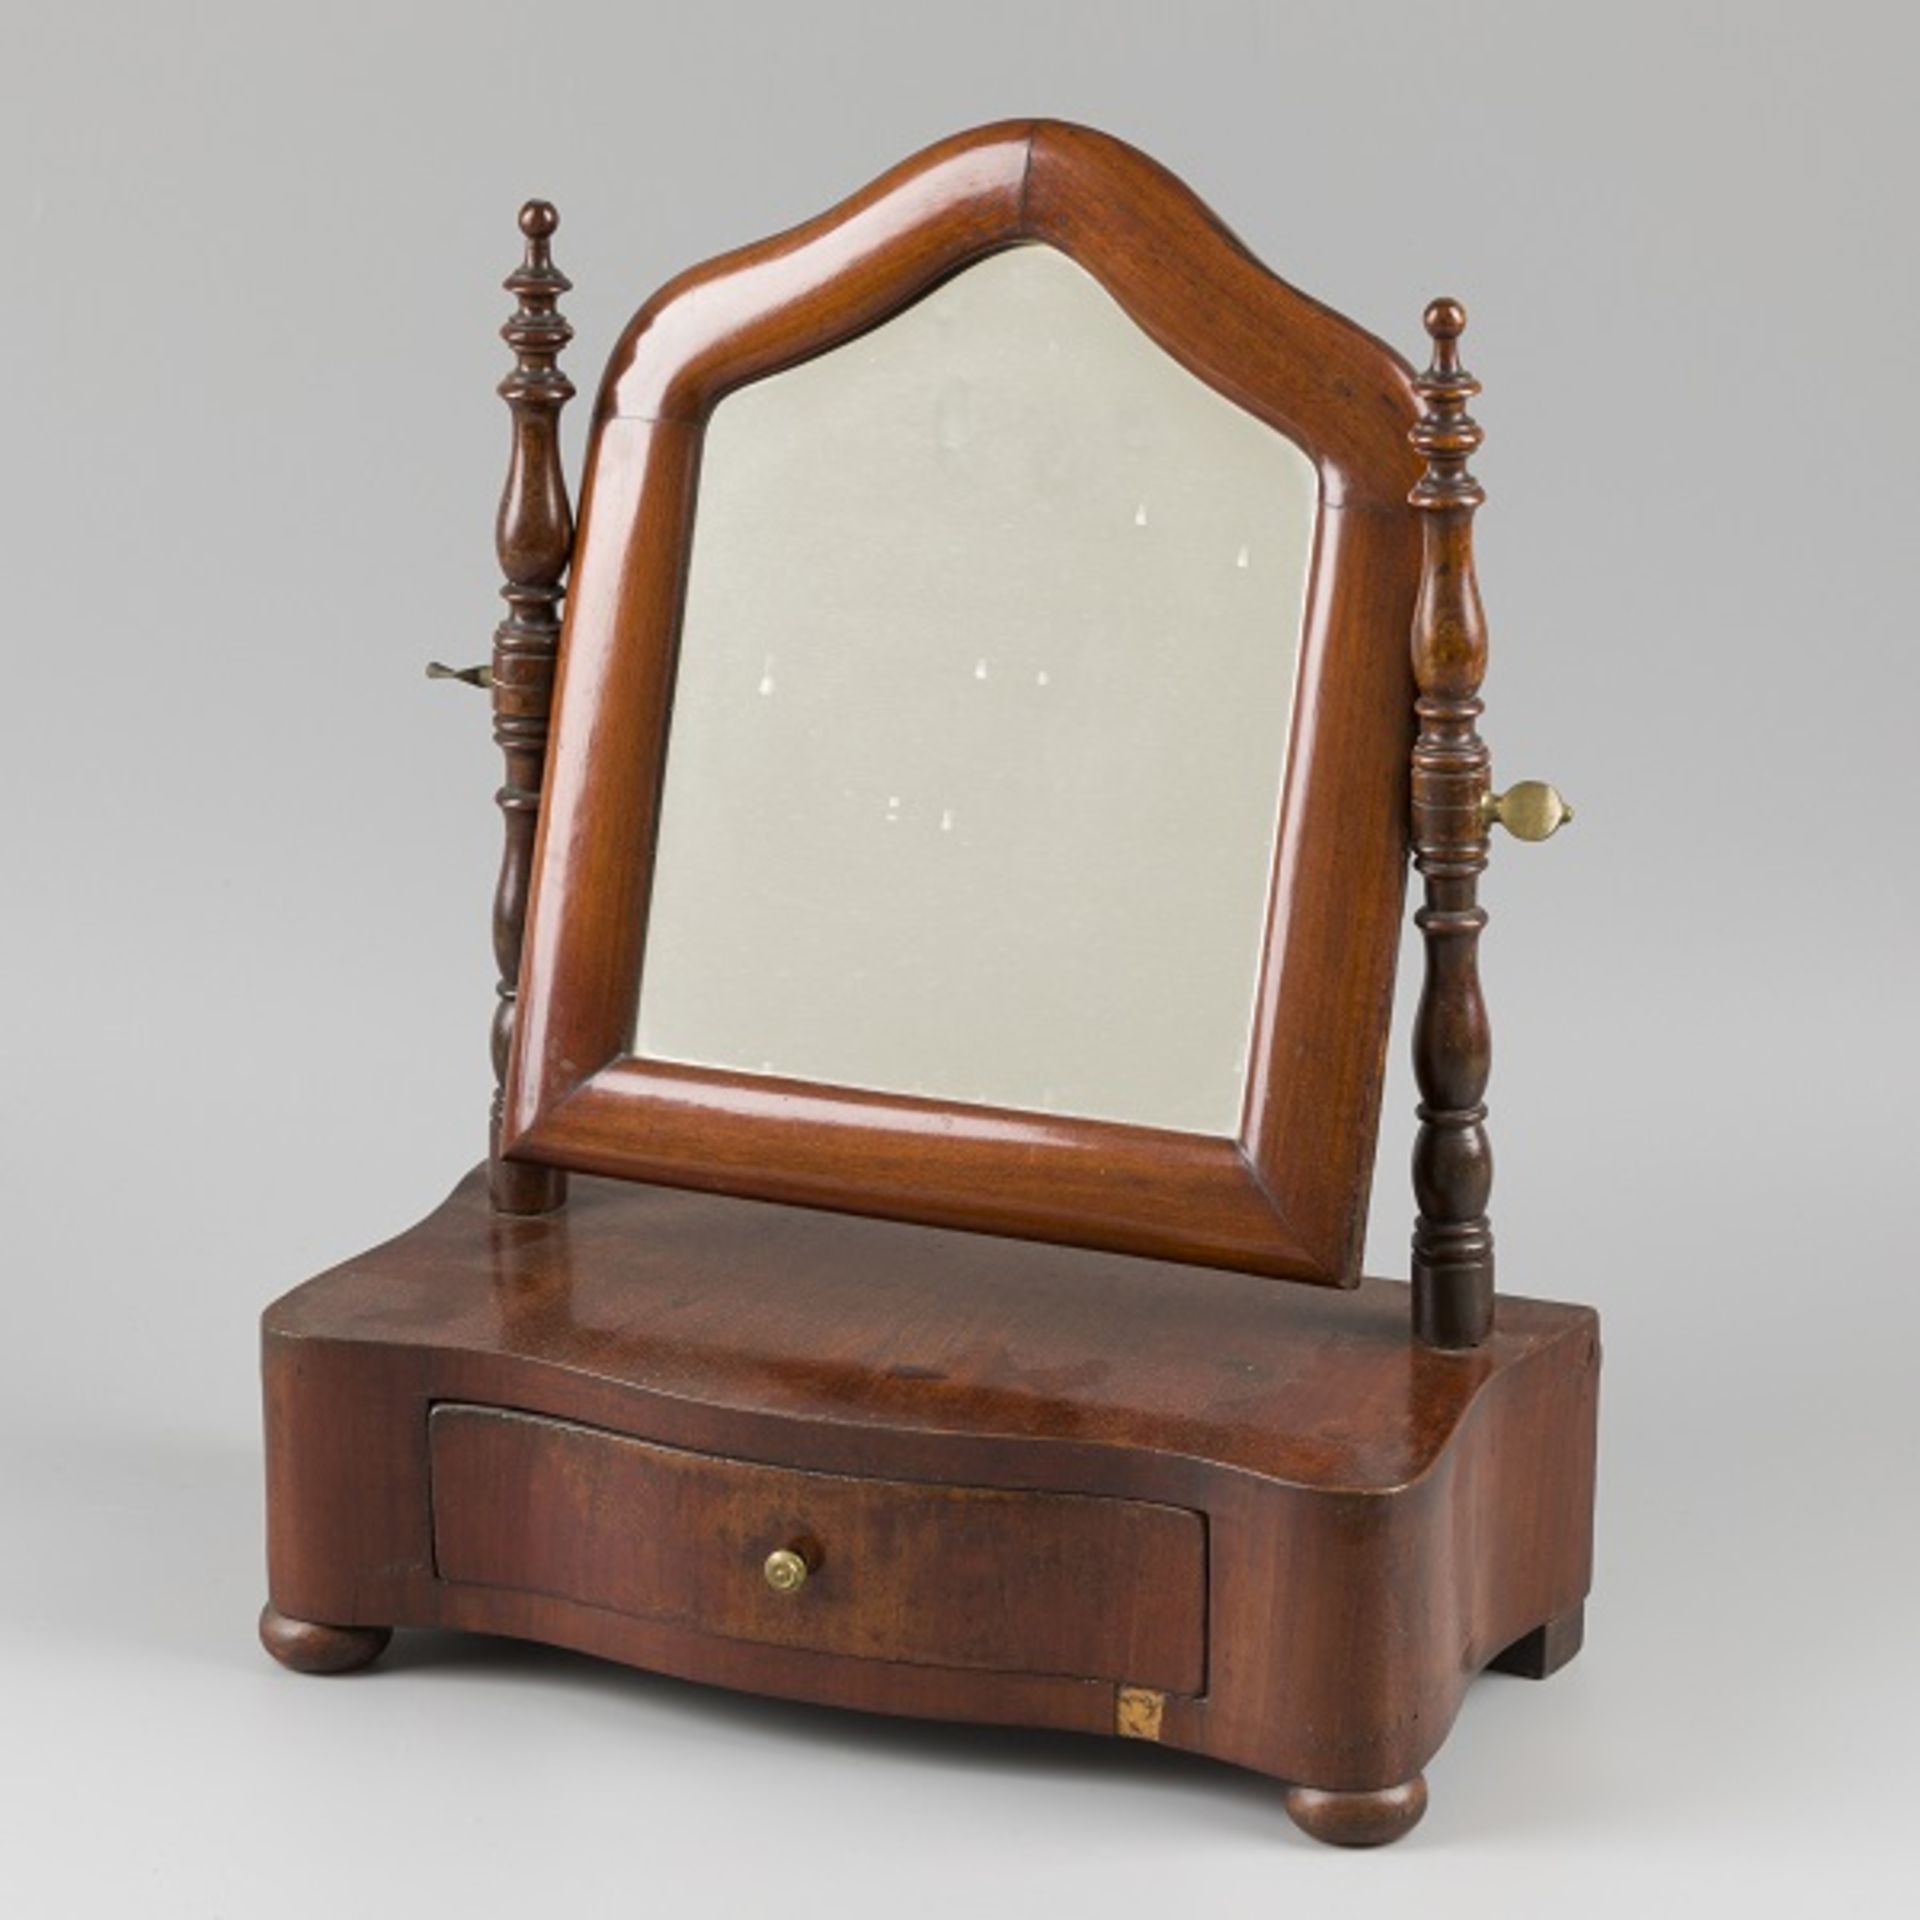 A mahogany veneered toilet mirror / vanity mirror, Germany(?), 19th century.